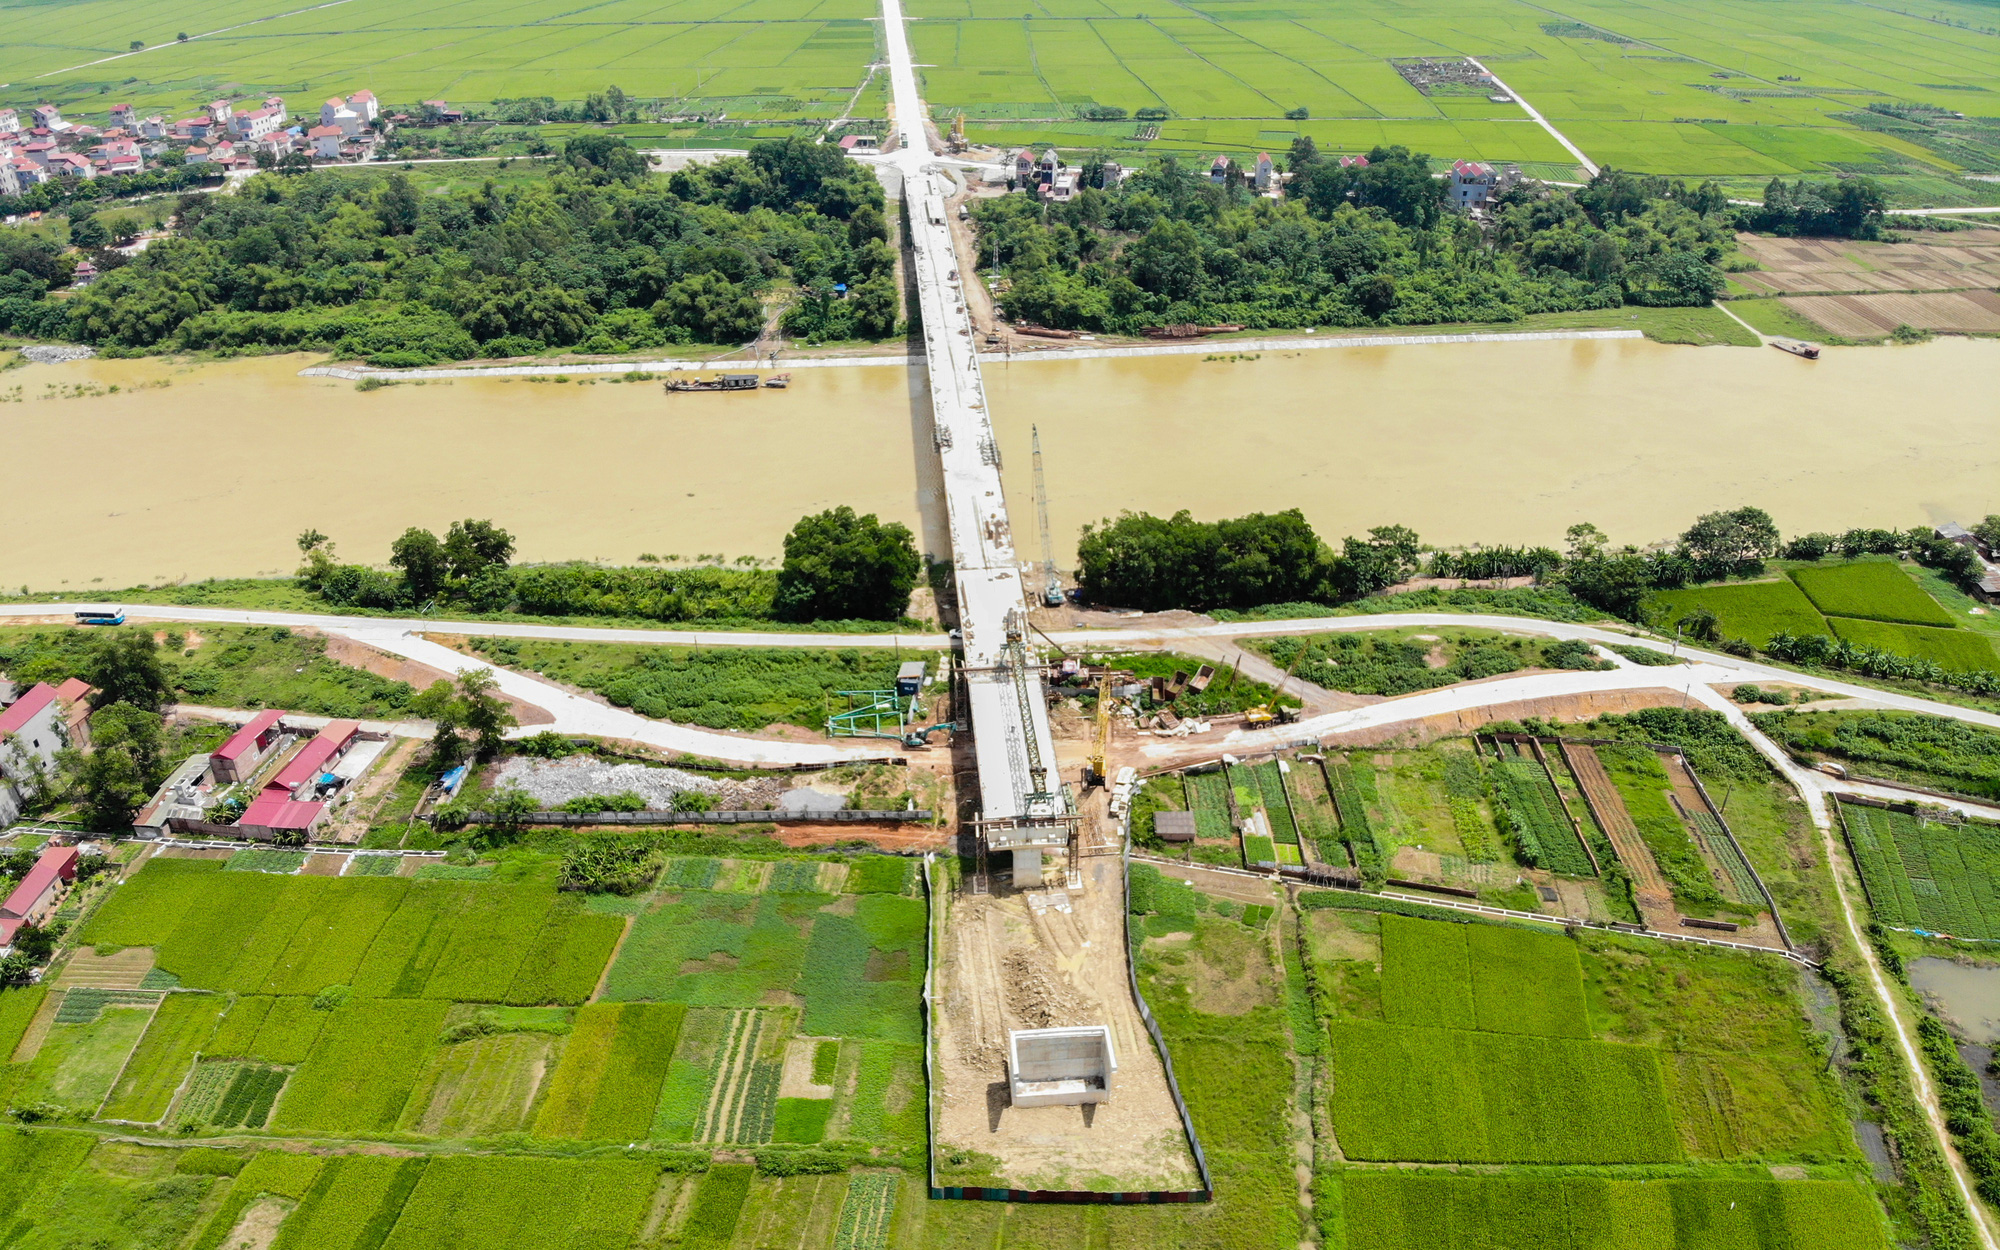 Toàn cảnh cây cầu vượt sông Cầu nối liền Hà Nội - Bắc Giang đang được xây dựng